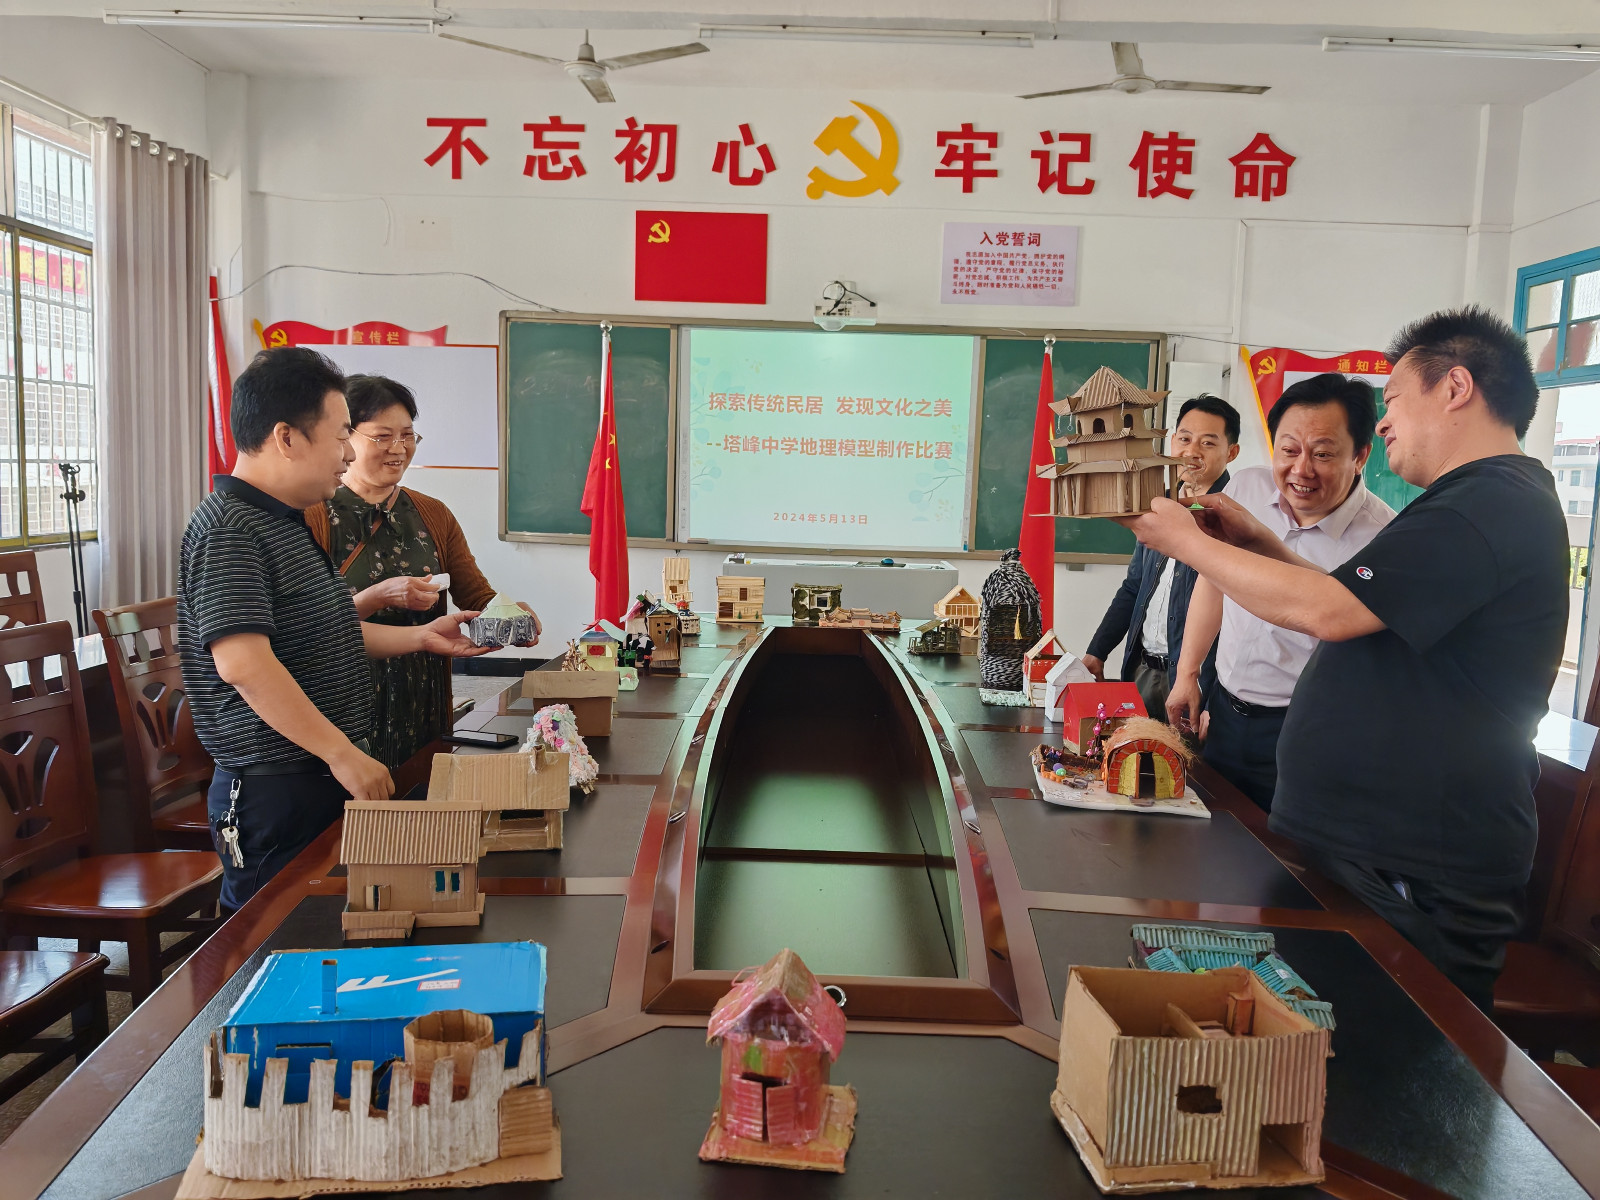 塔峰中学举行地理模型制作比赛